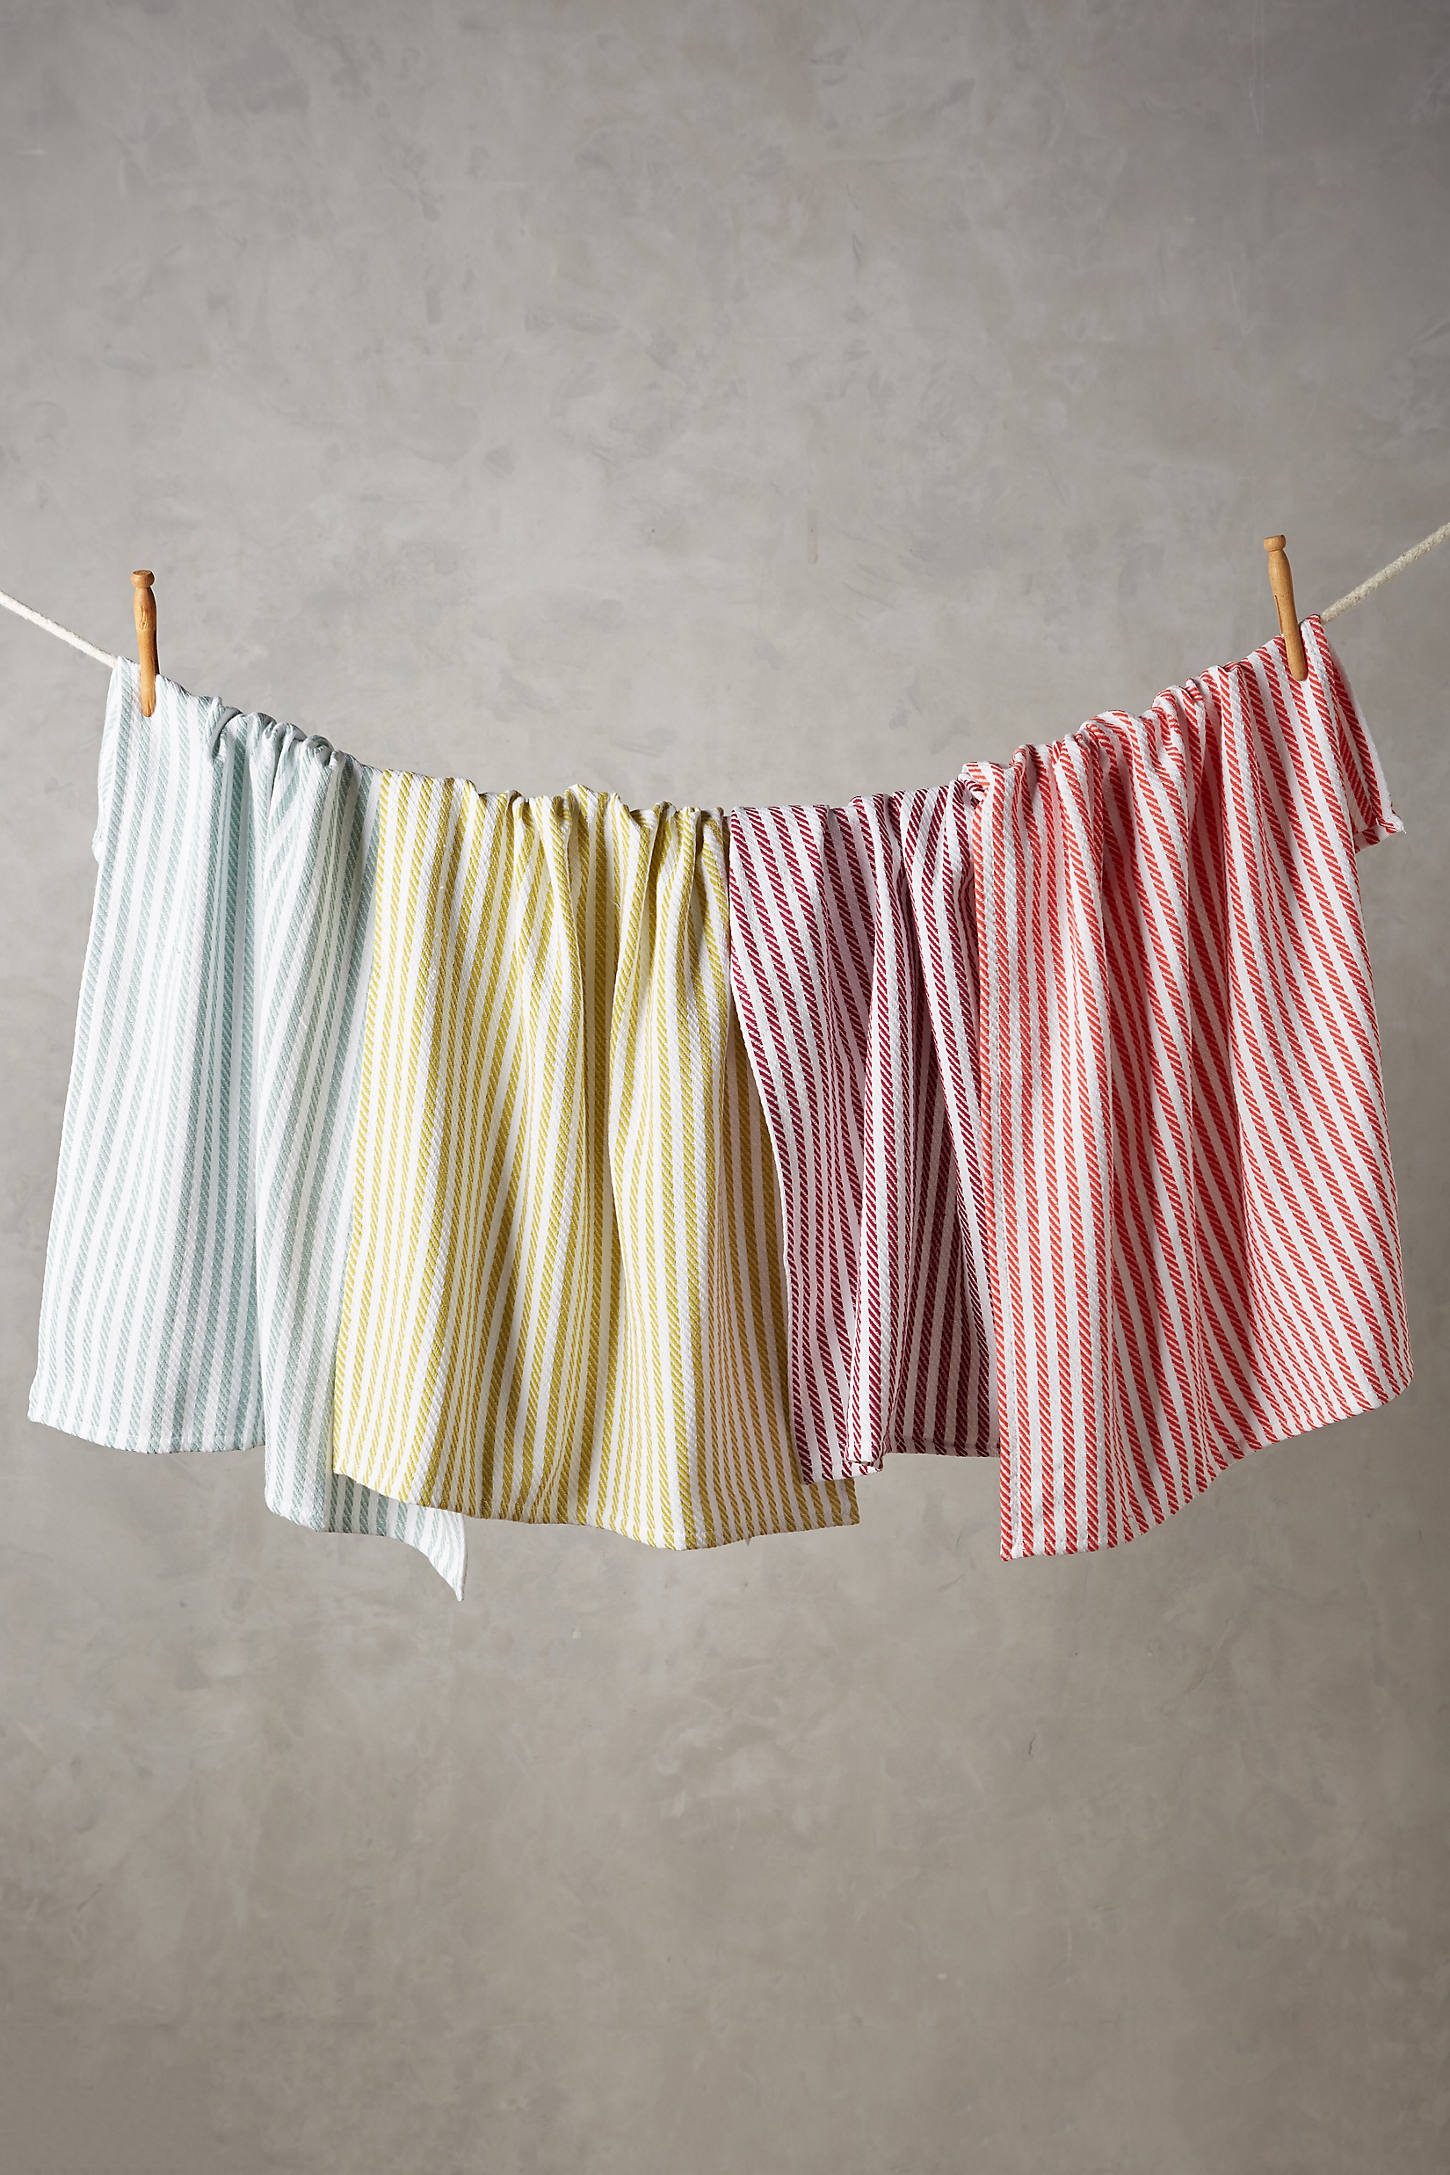 Baker Stripe Dish Towels, Set of 4 - Image 0